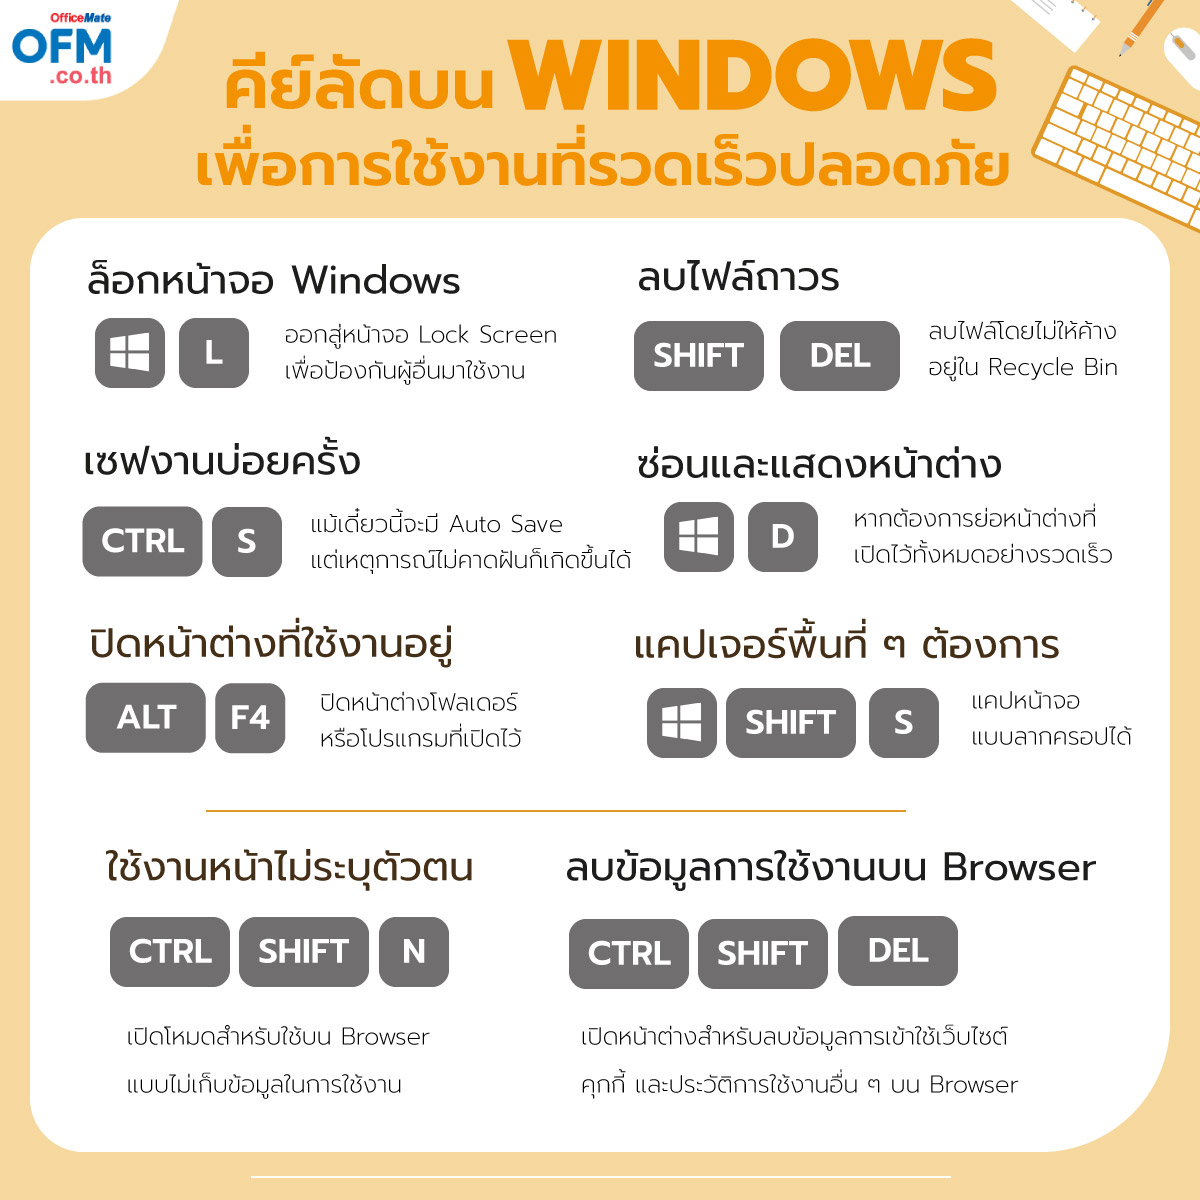 คีย์ลัด_Windows_2_OfficeMate